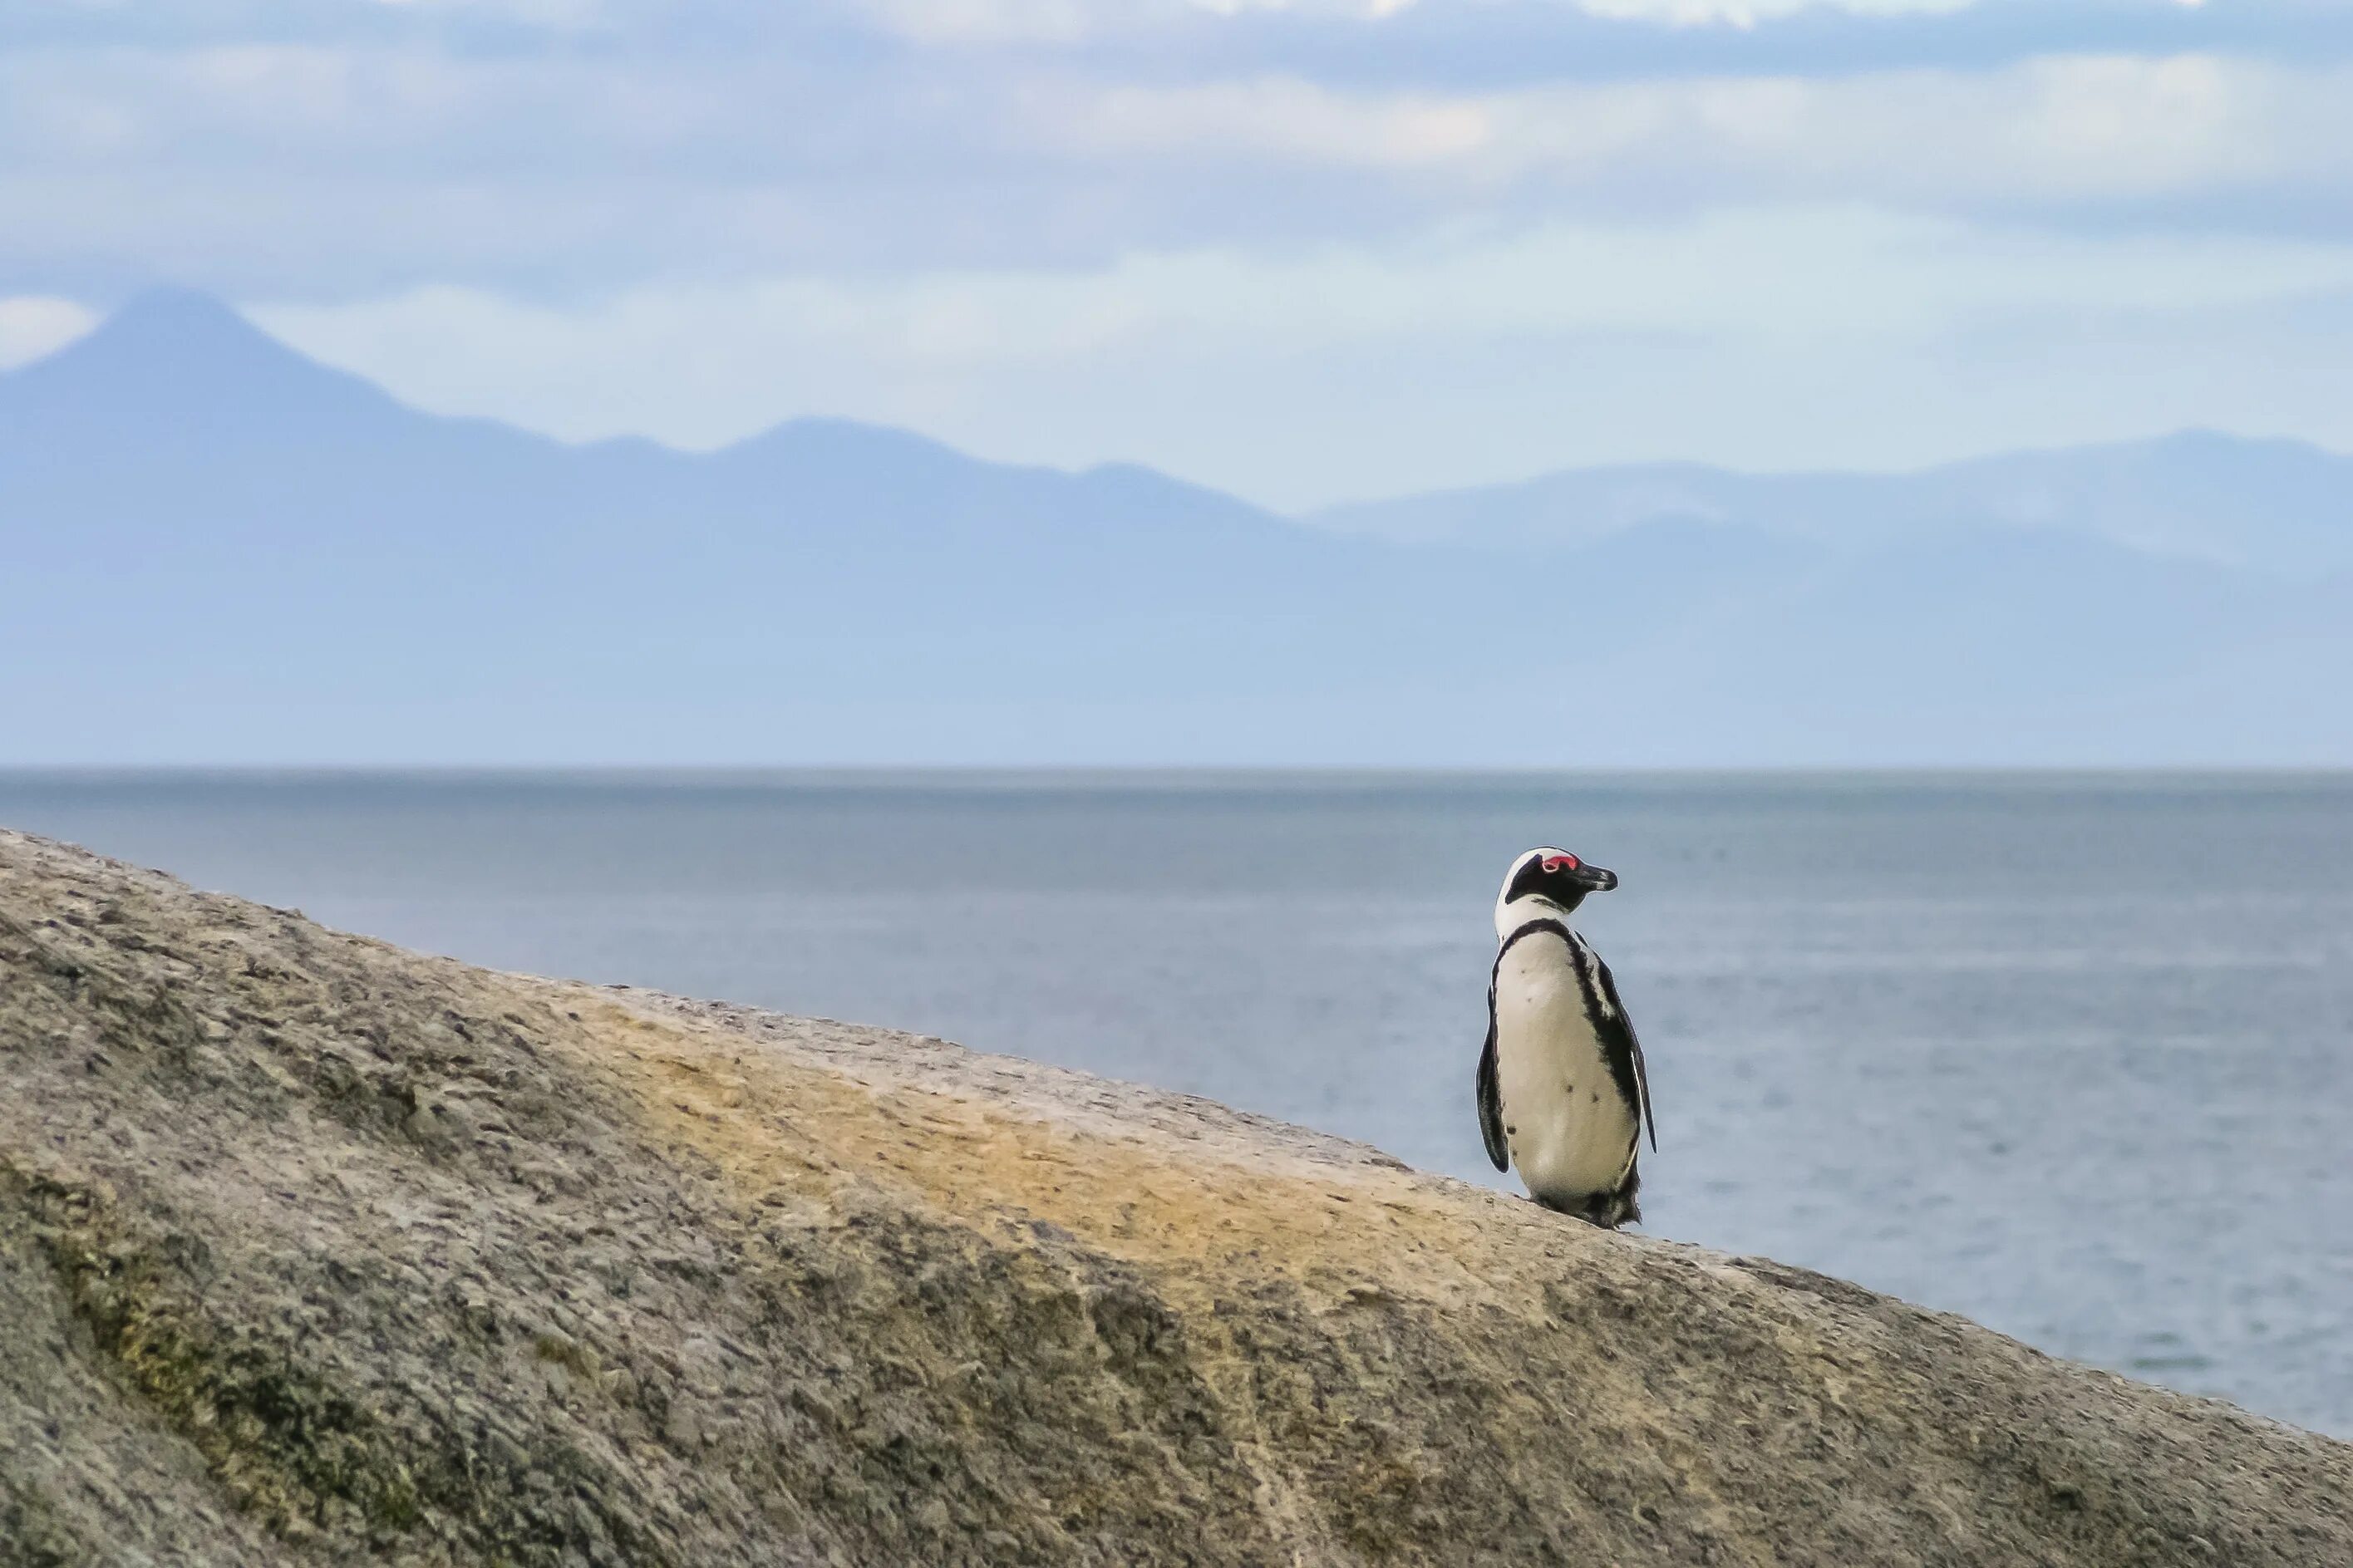 Пингвины идут с пляжа молча. Одинокий Пингвин. Одинокий Пингвин бредущий осень. Фото 2 пингвина идущих по берегу.